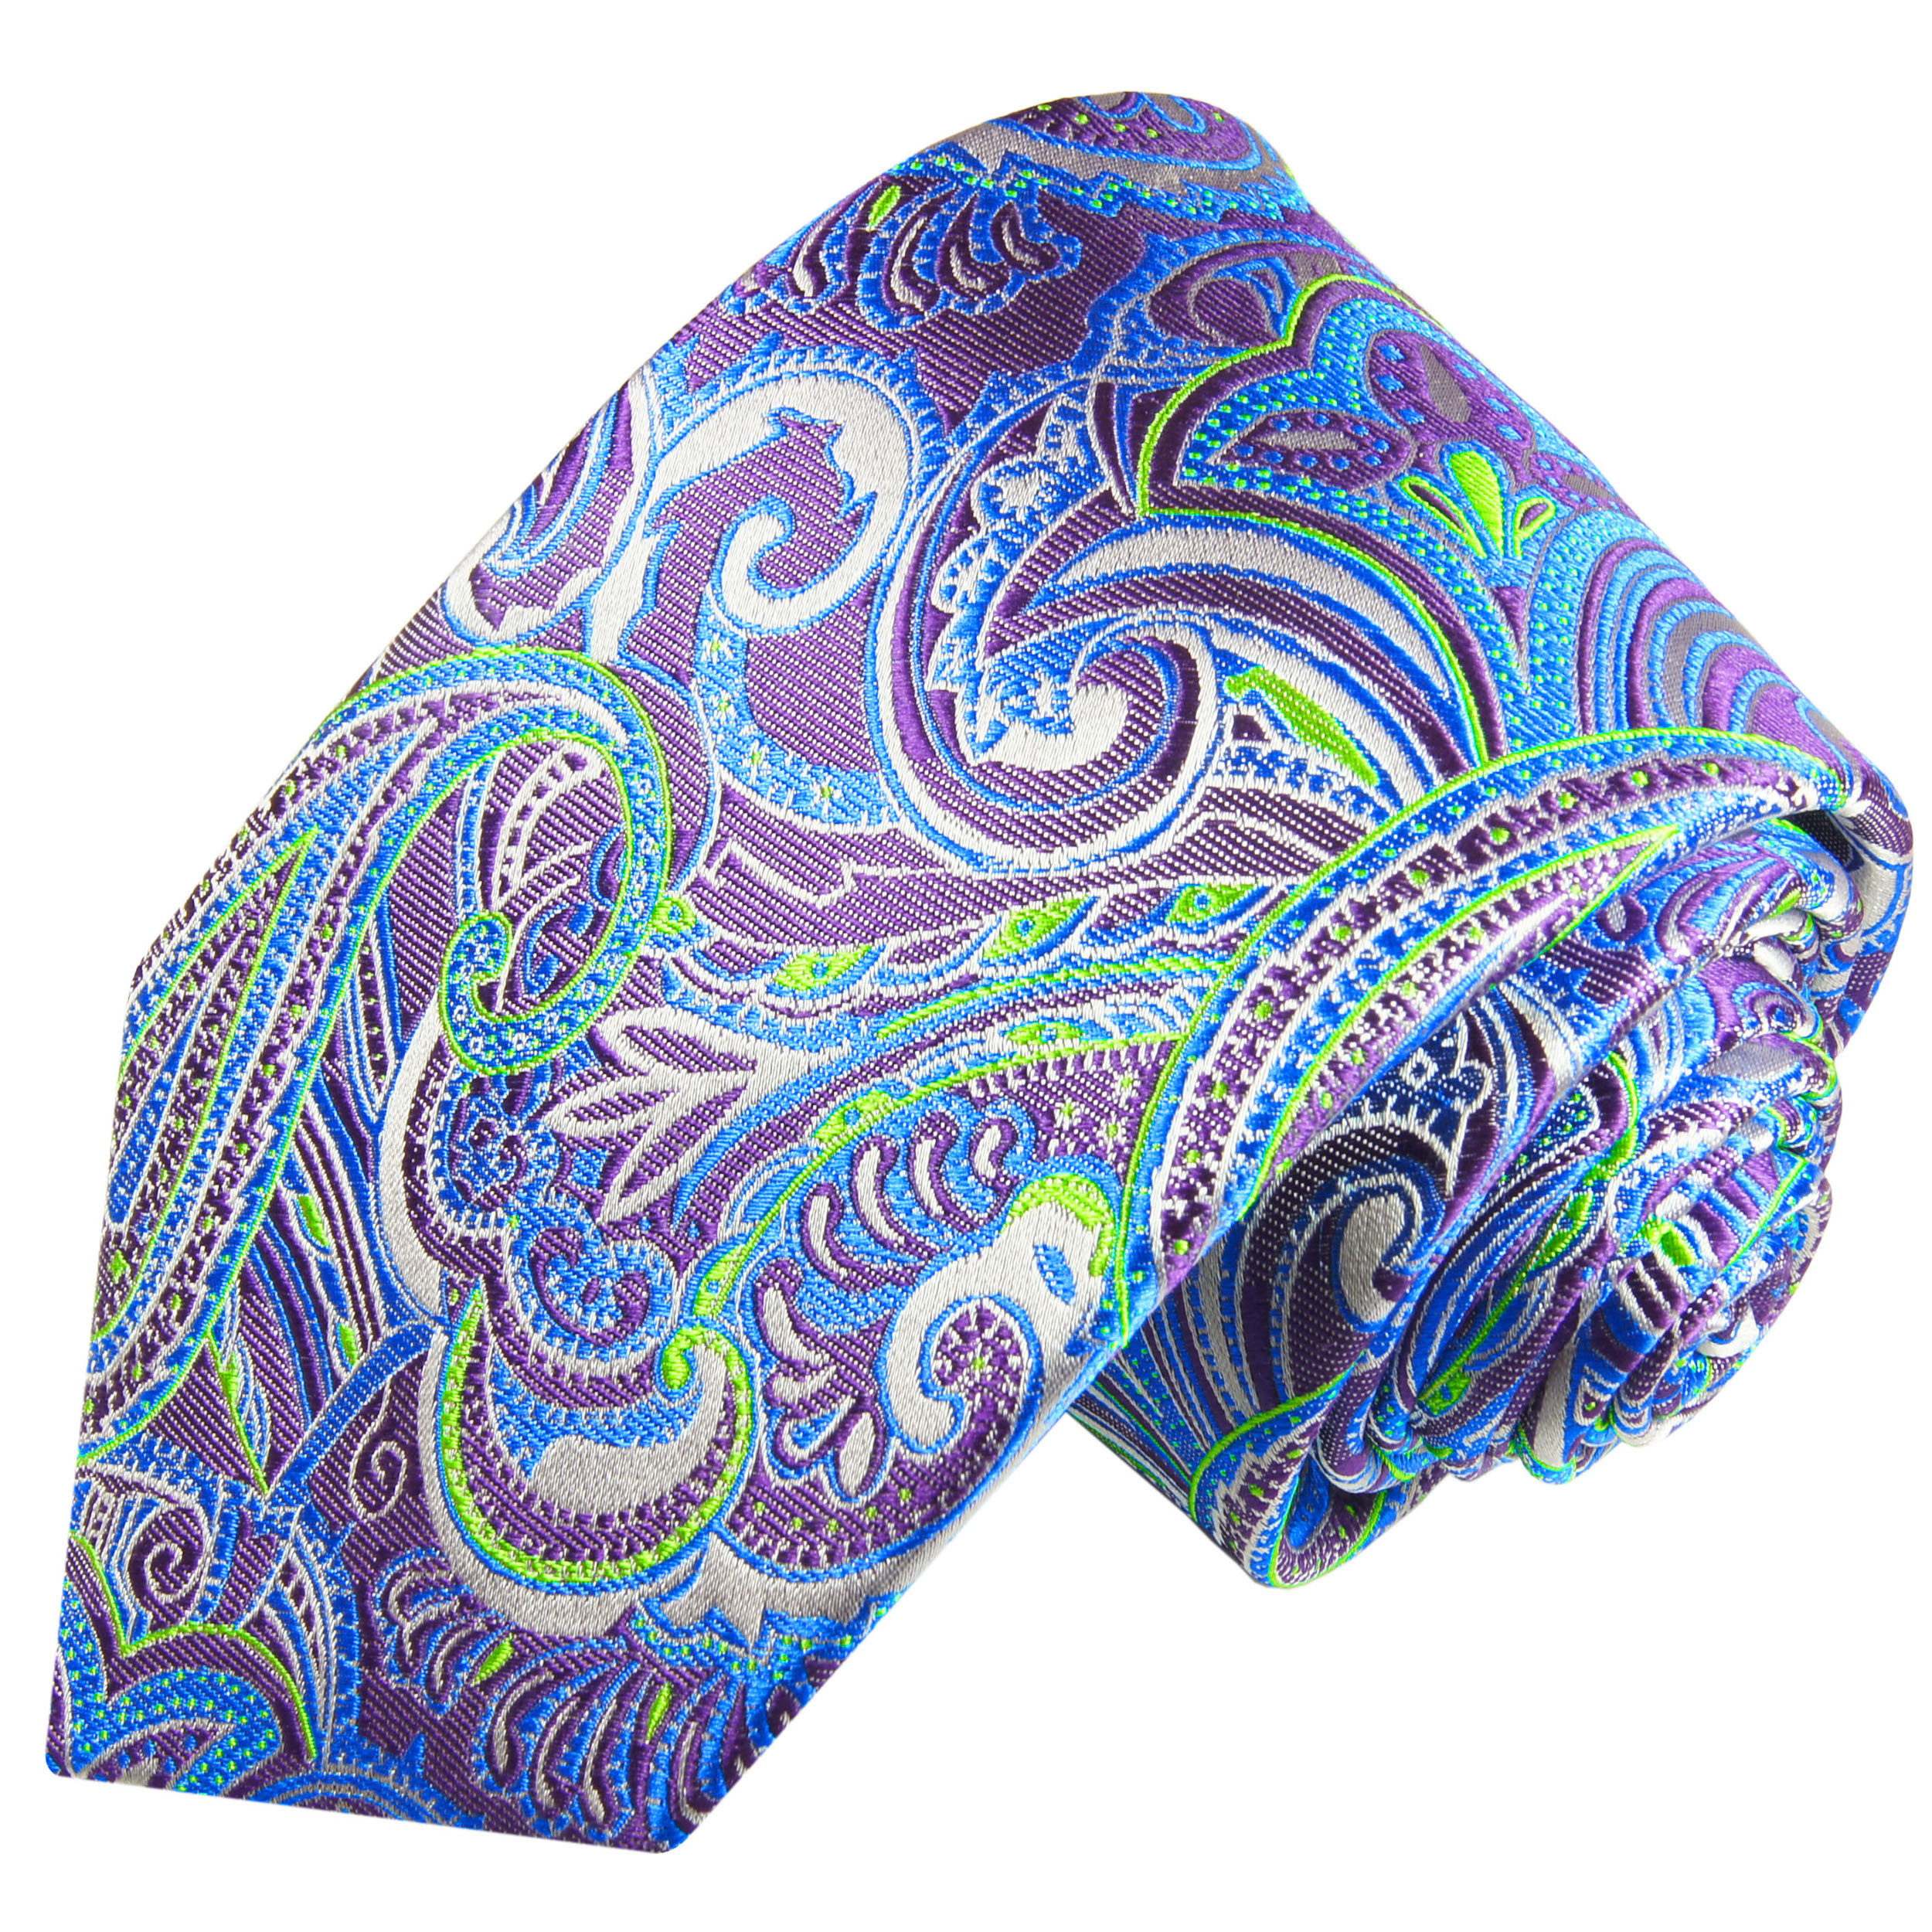 Paul Malone Krawatte 100% Seide blau lila paisley 2060 - Paul Malone Shop